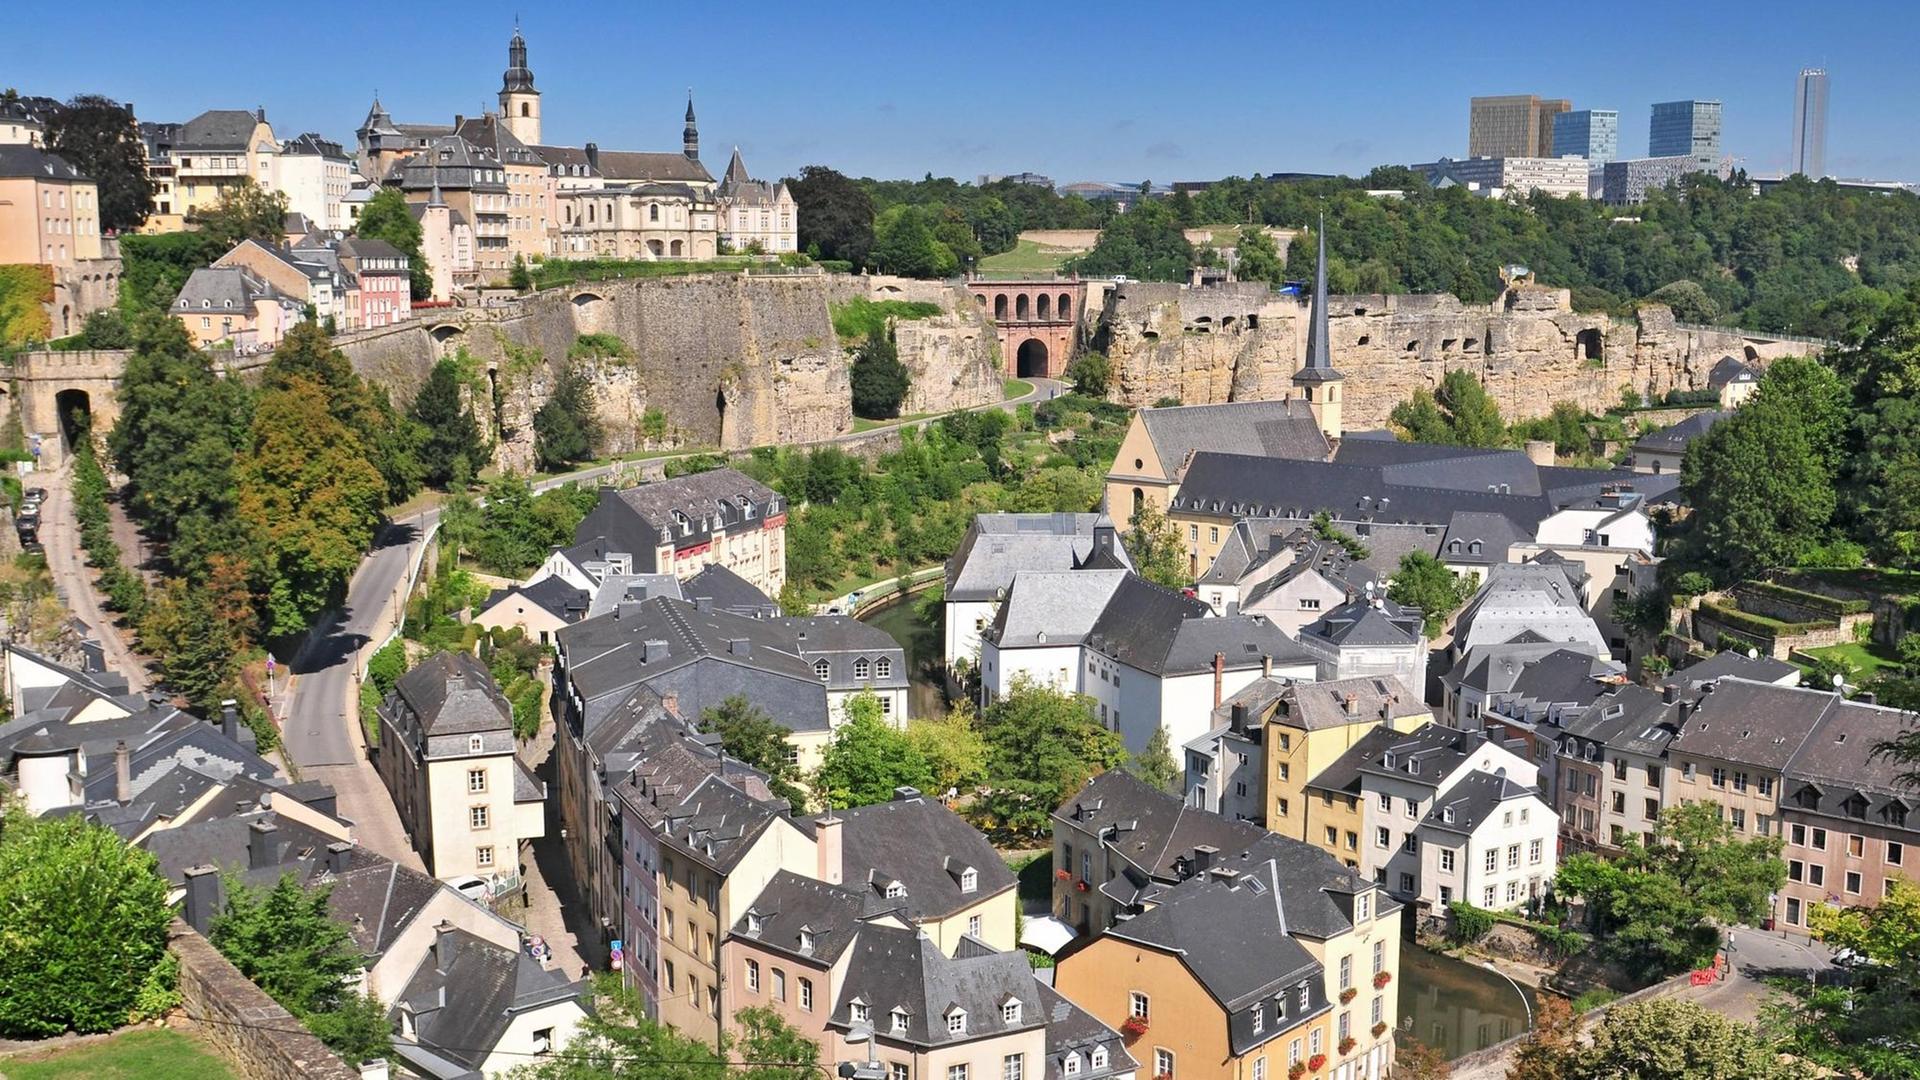 Blick auf die Altstadt von Luxembourg.